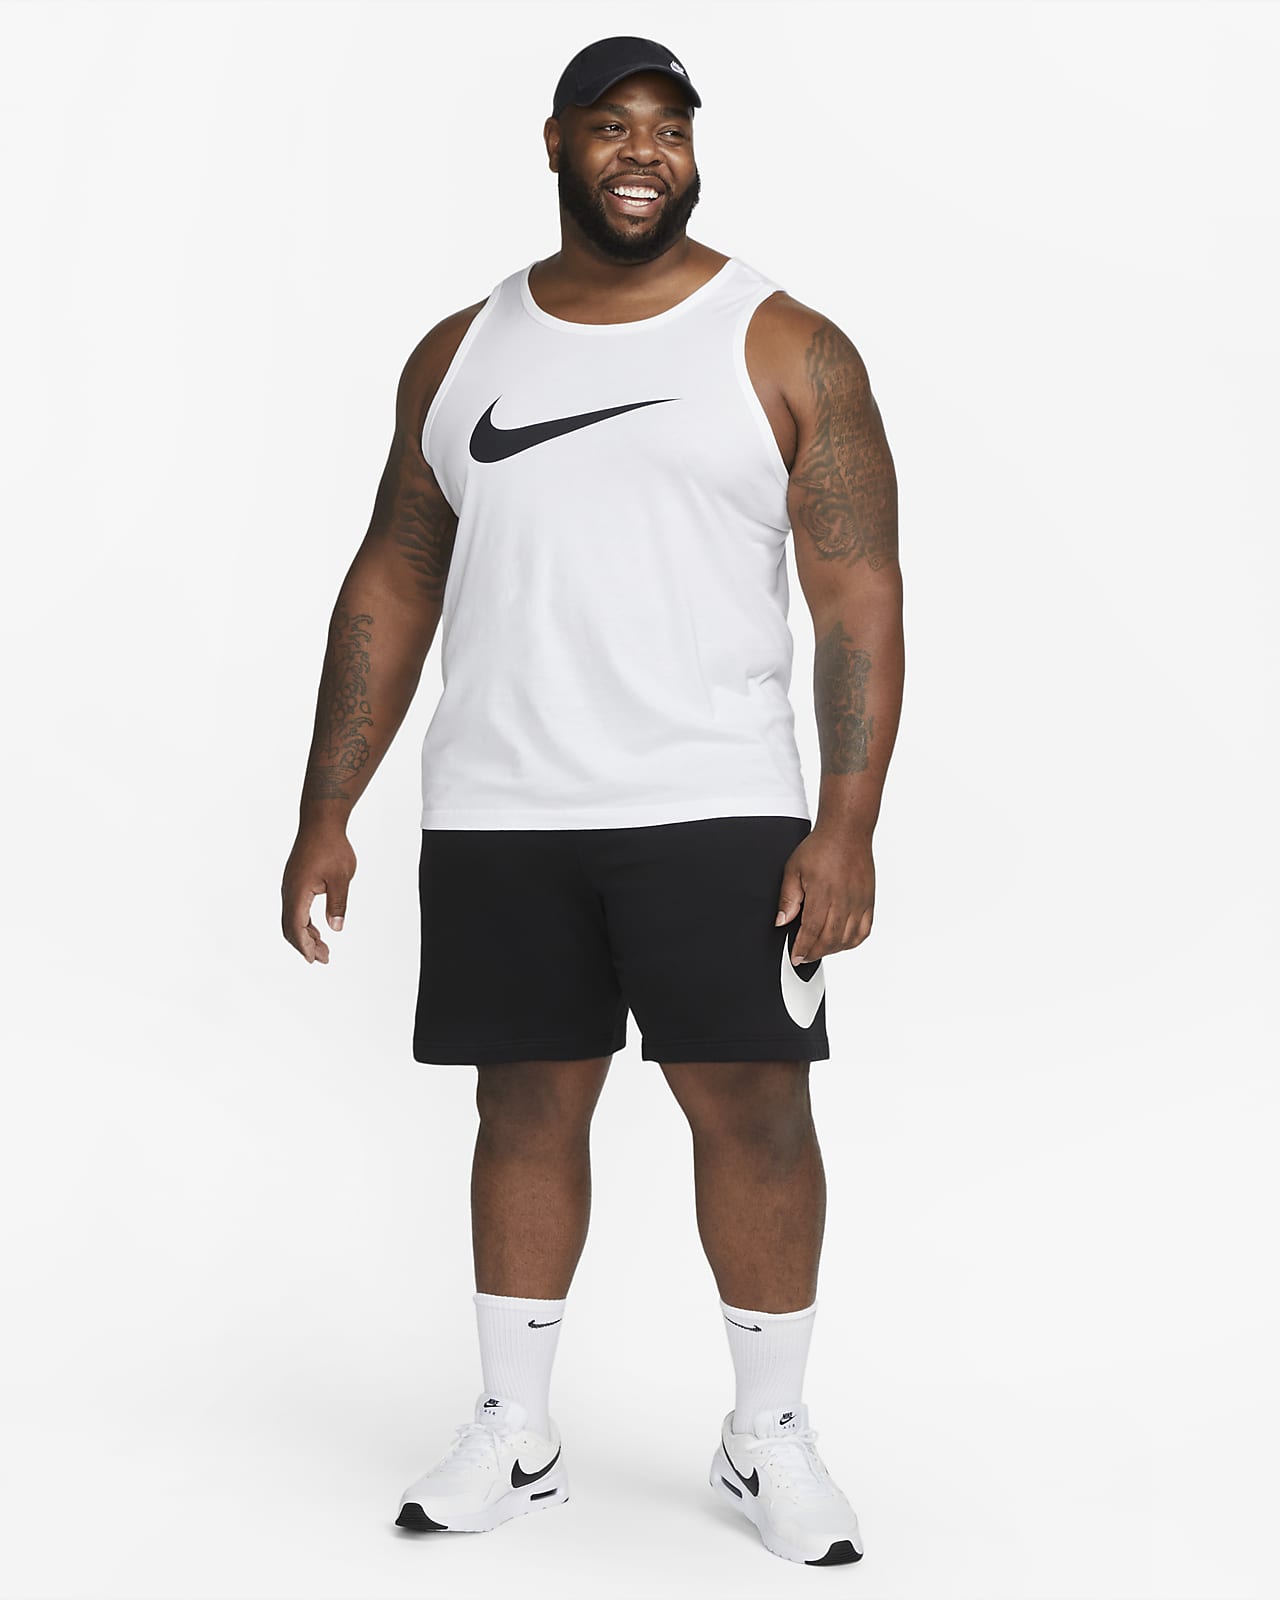 Nike Sportswear Men's Tank Top.